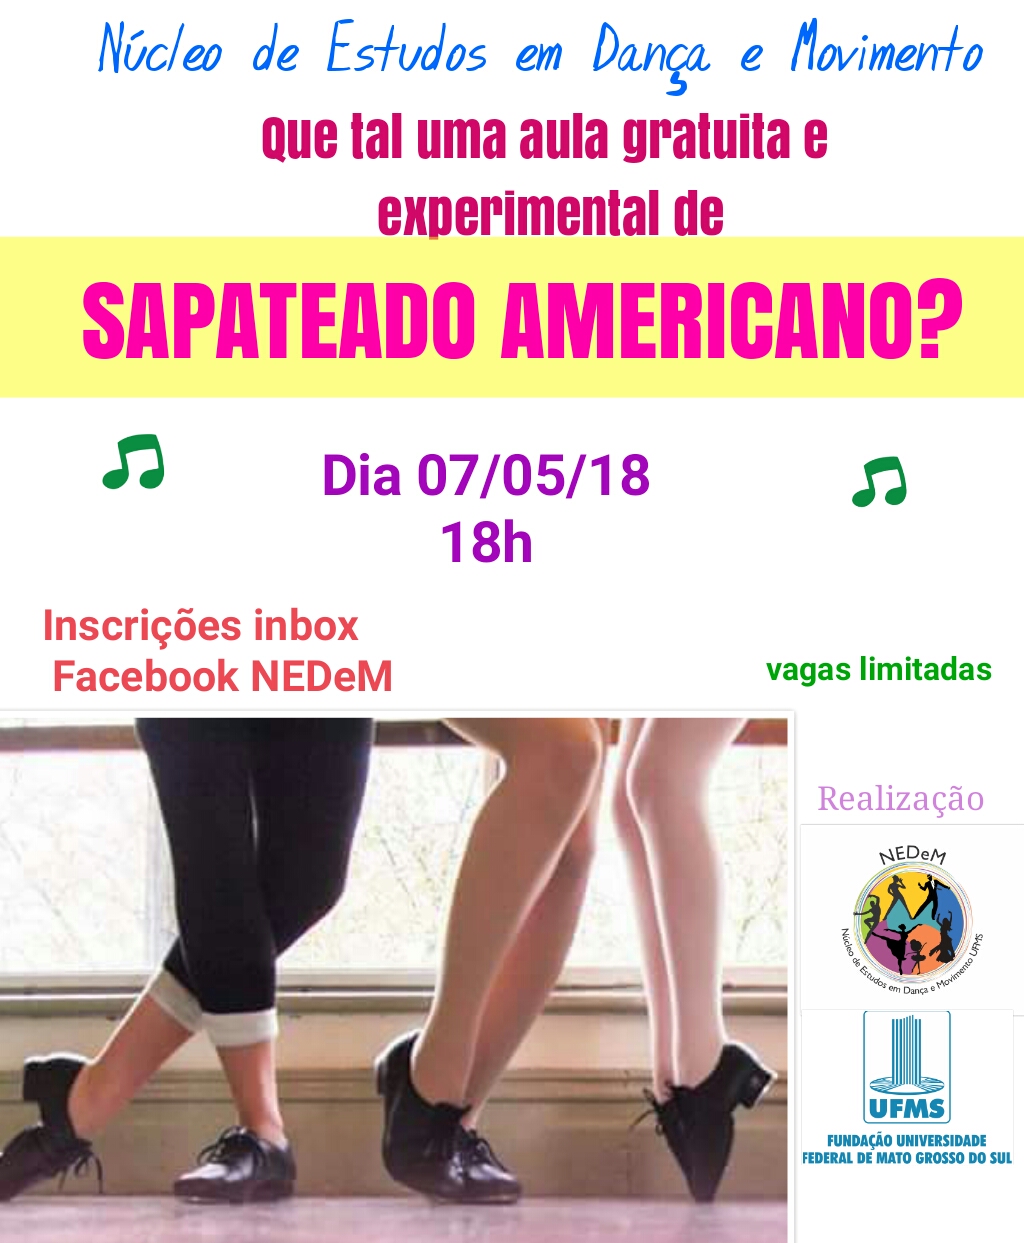 To disable Antagonism Survive NEDeM oferece aula experimental de Sapateado Americano no dia 7 - PROECE-  UFMS